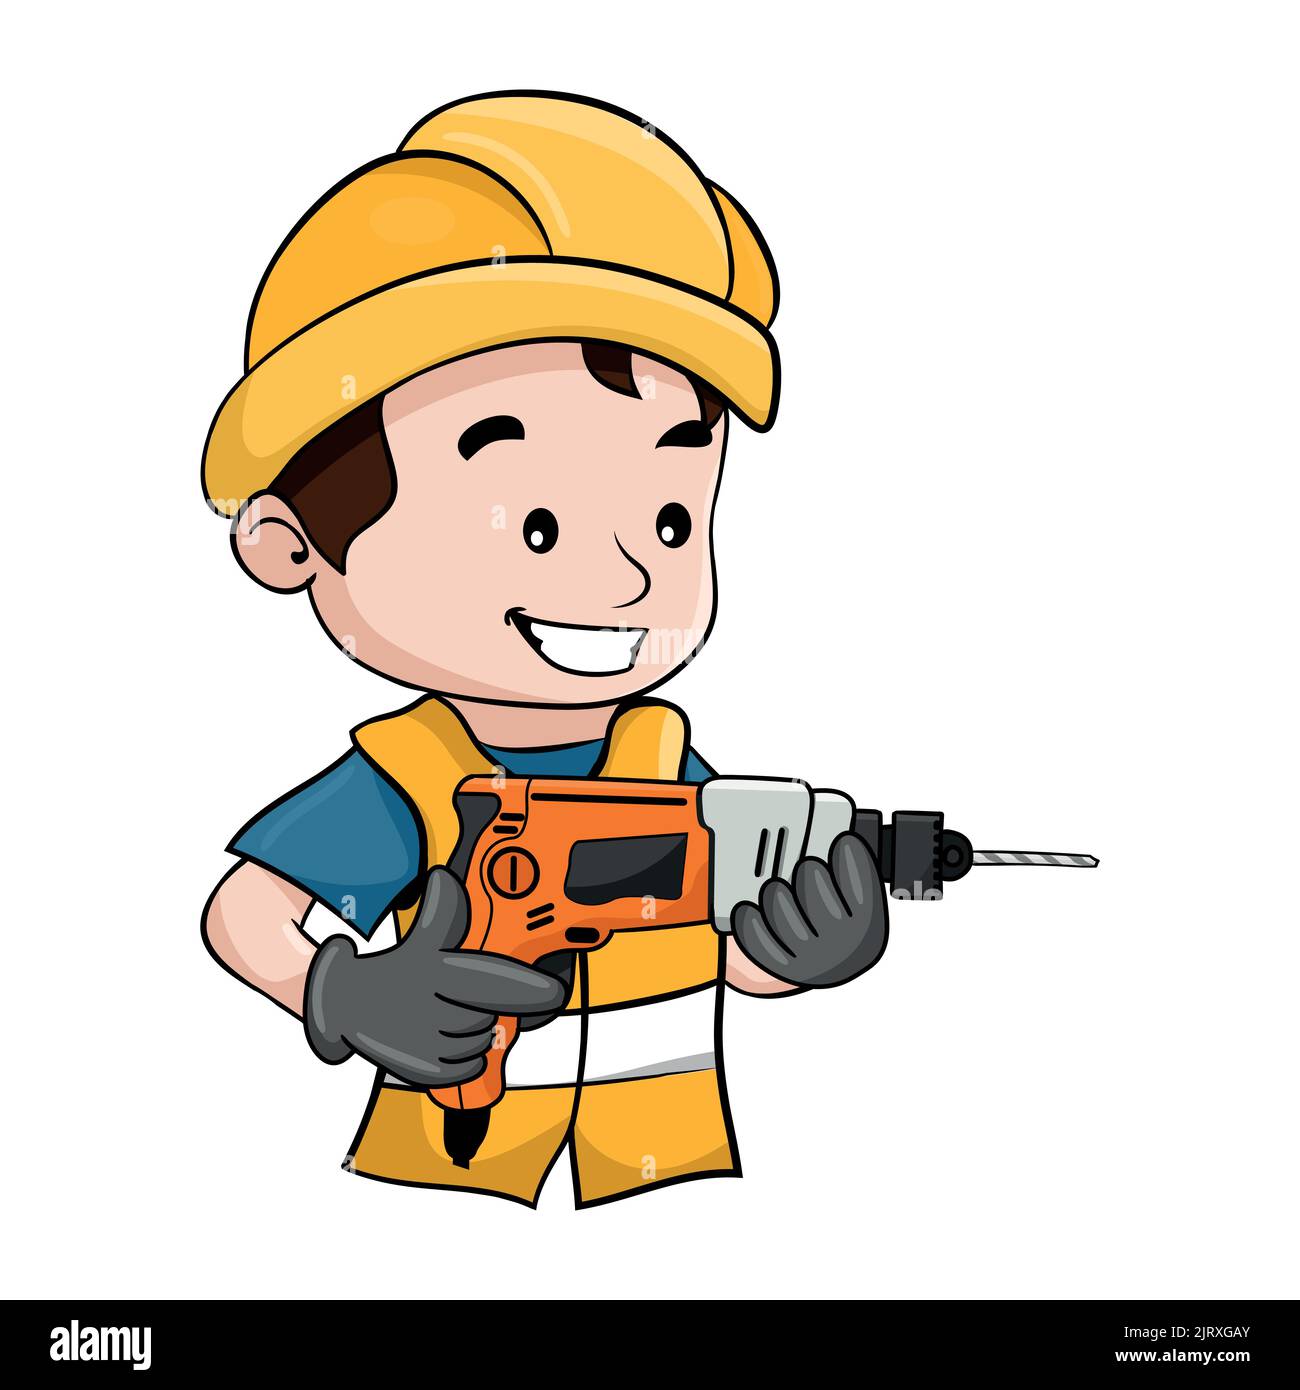 Cartoon-Design des Arbeiters mit seinem Schutzhelm, der eine Bohrmaschine betreibt. Industriearbeiter im Bauwesen oder in der Zimmerei Stock Vektor